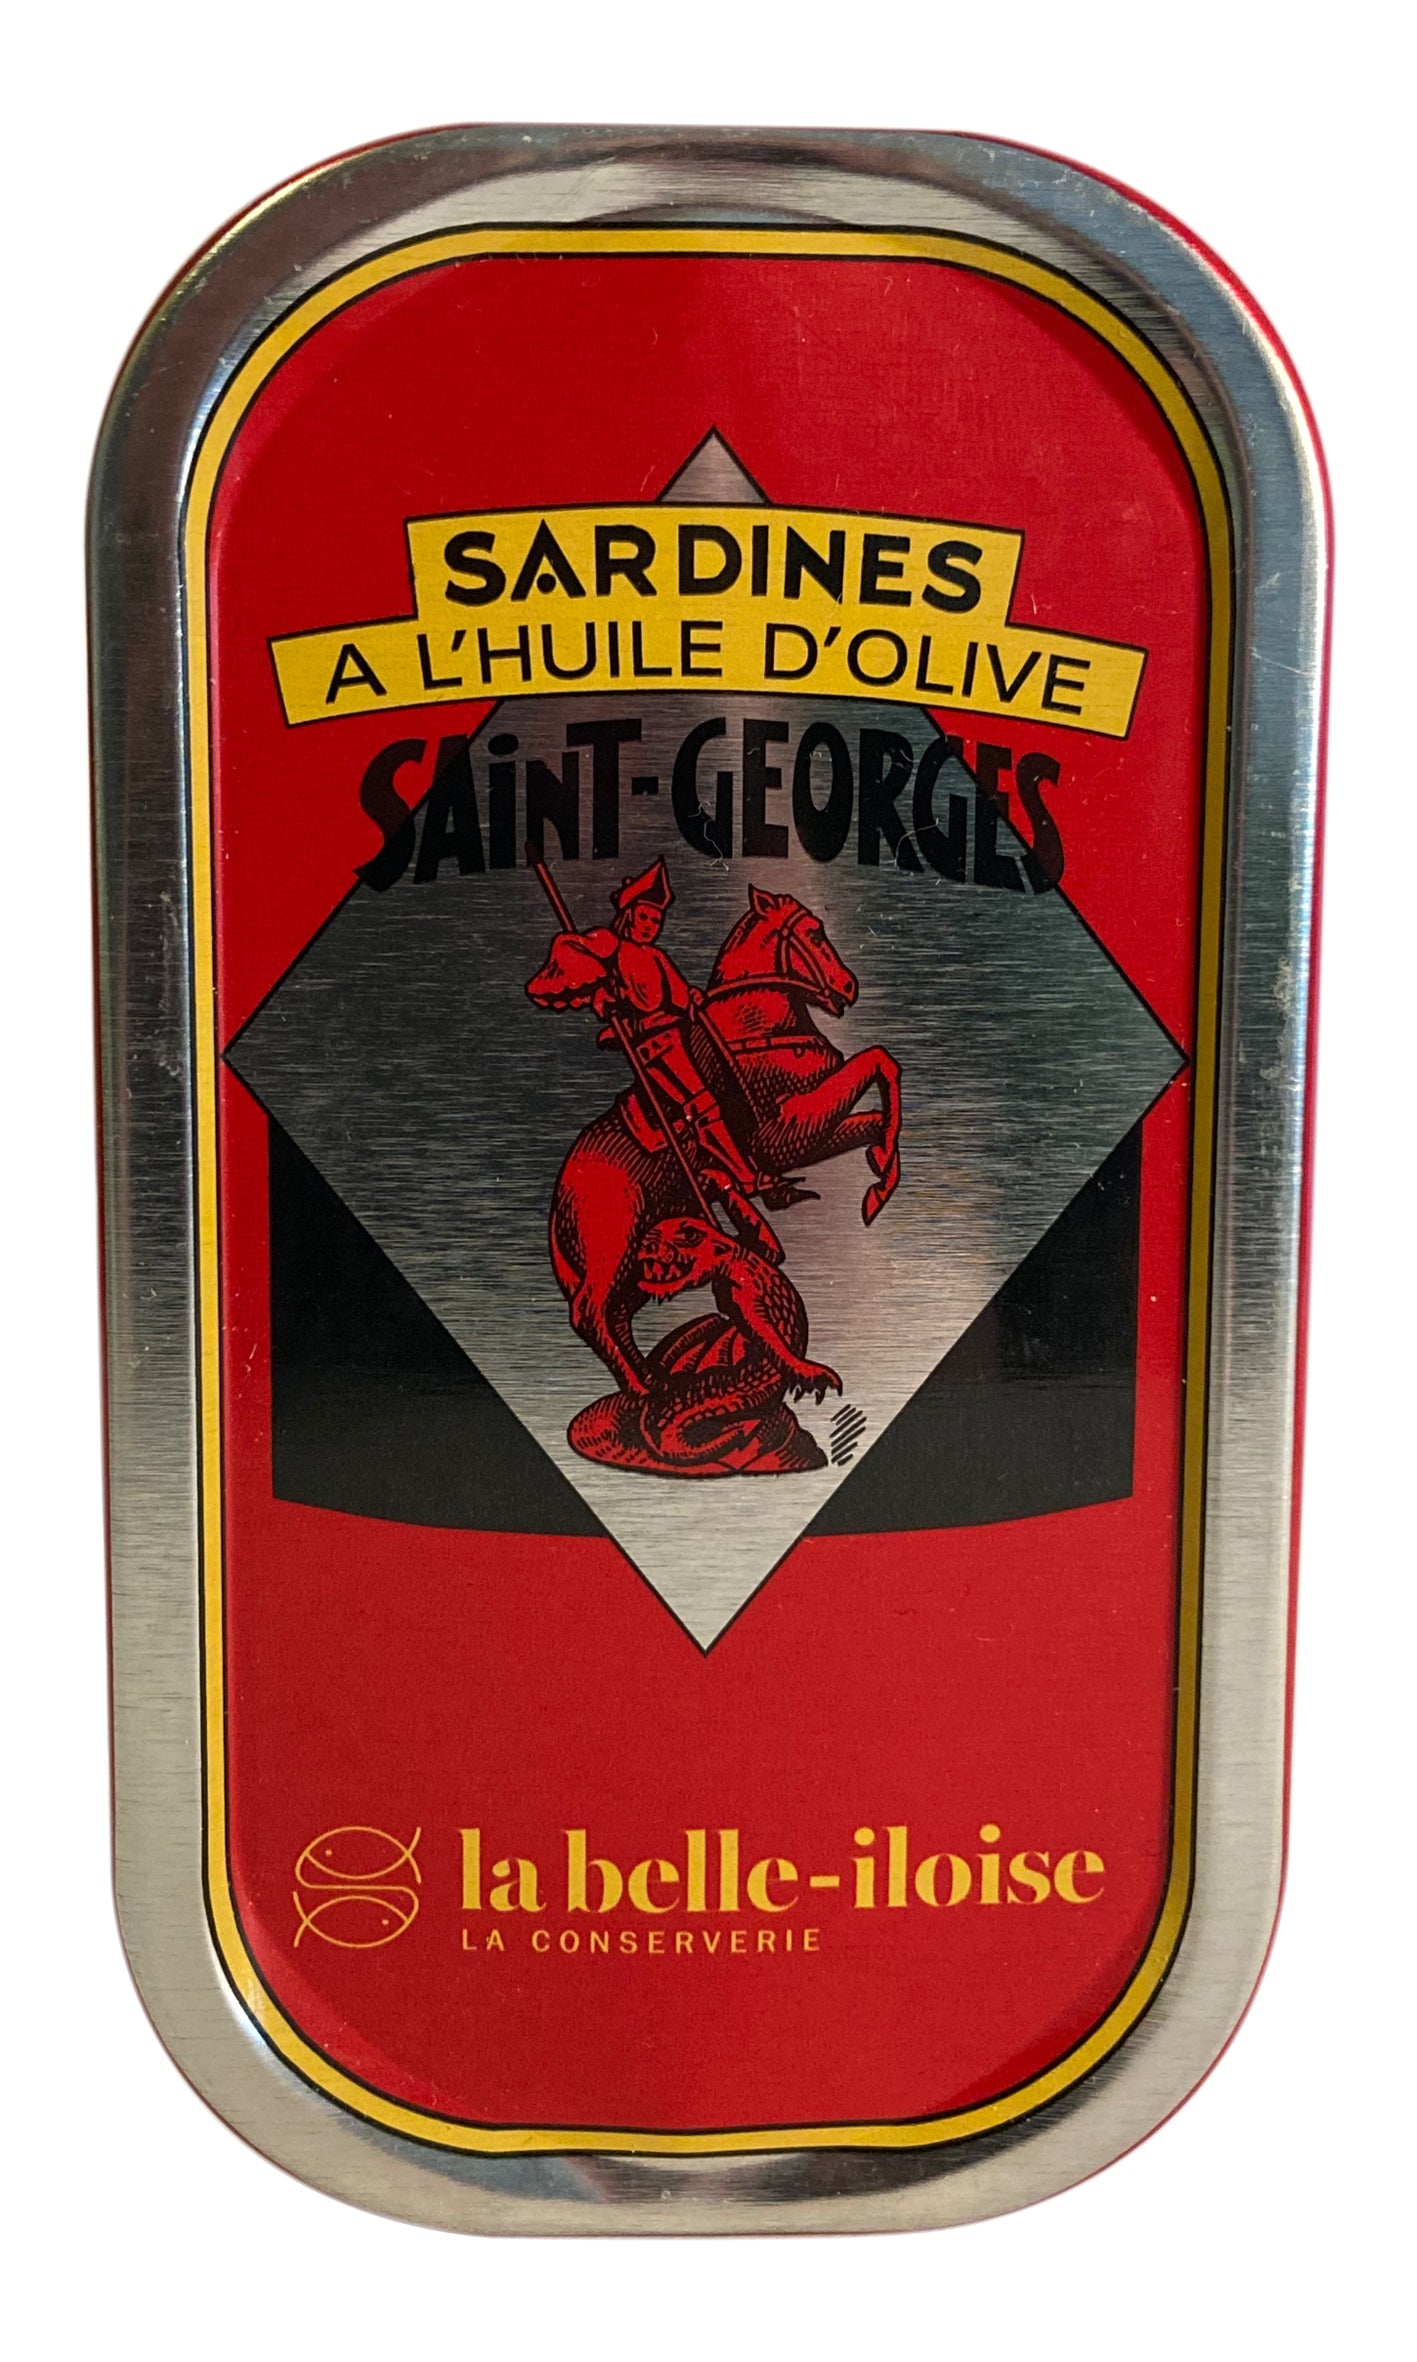 Conserverie la belle-iloise - Sardines Saint-Georges in olive oil - 69g